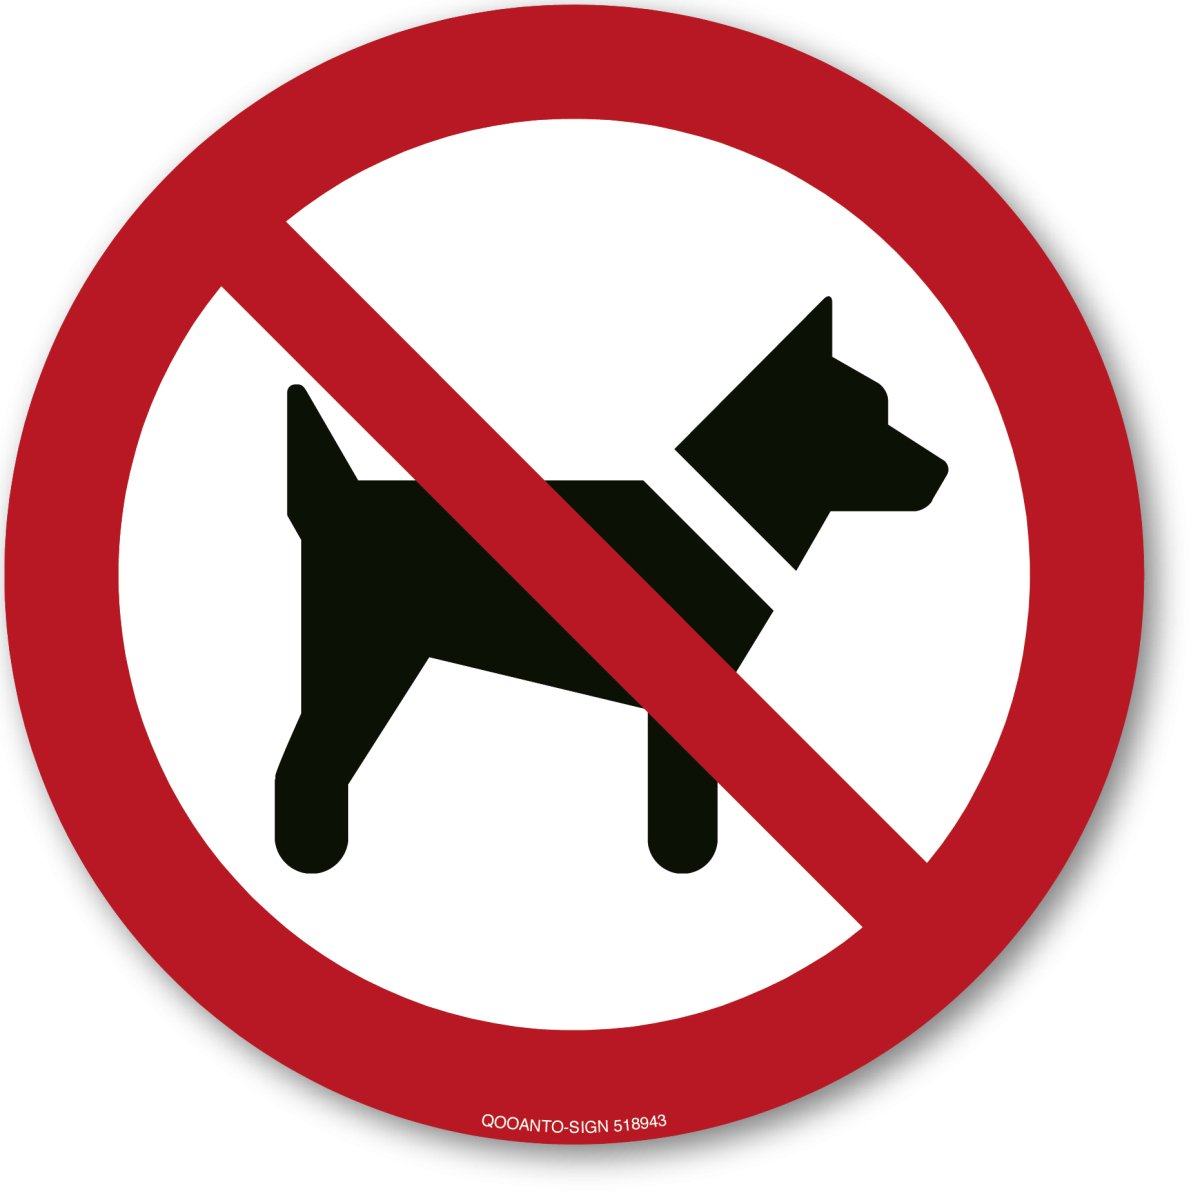 Mitführen Von Hunden Verboten, EN ISO 7010, P0321 Verbotsschild oder Aufkleber aus Alu-Verbund oder Selbstklebefolie mit UV-Schutz - QOOANTO-SIGN